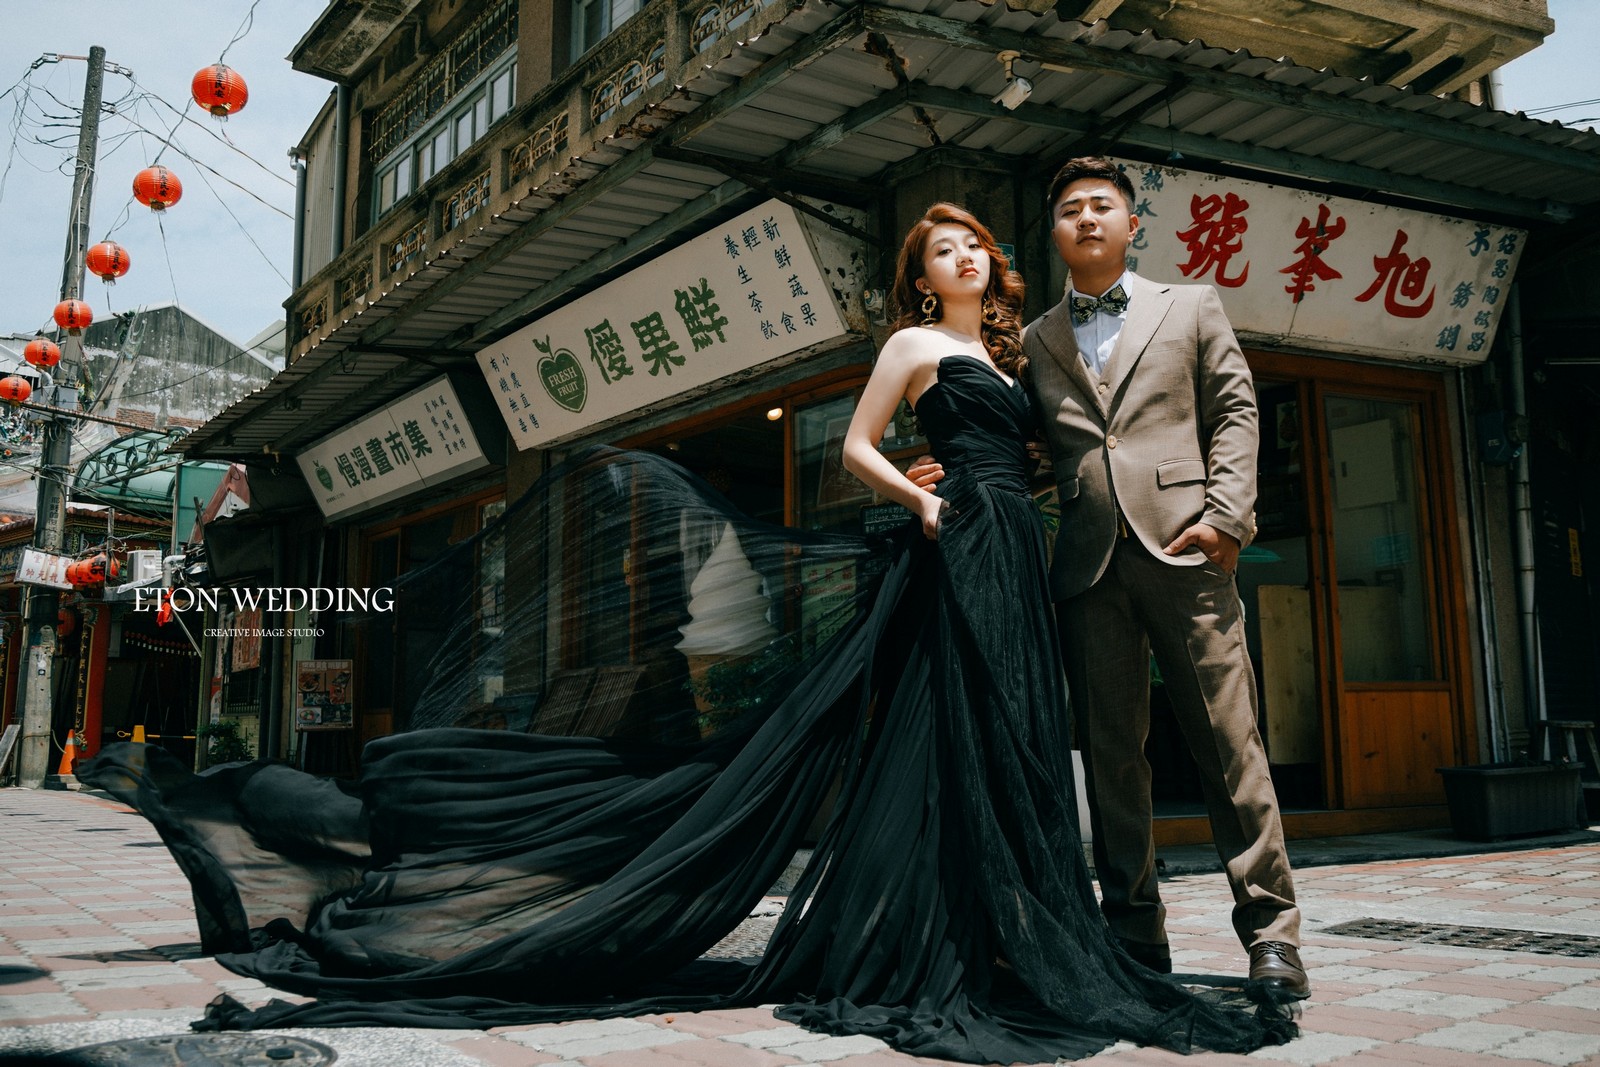 台南婚紗工作室,台南婚紗店,台南個人婚紗工作室